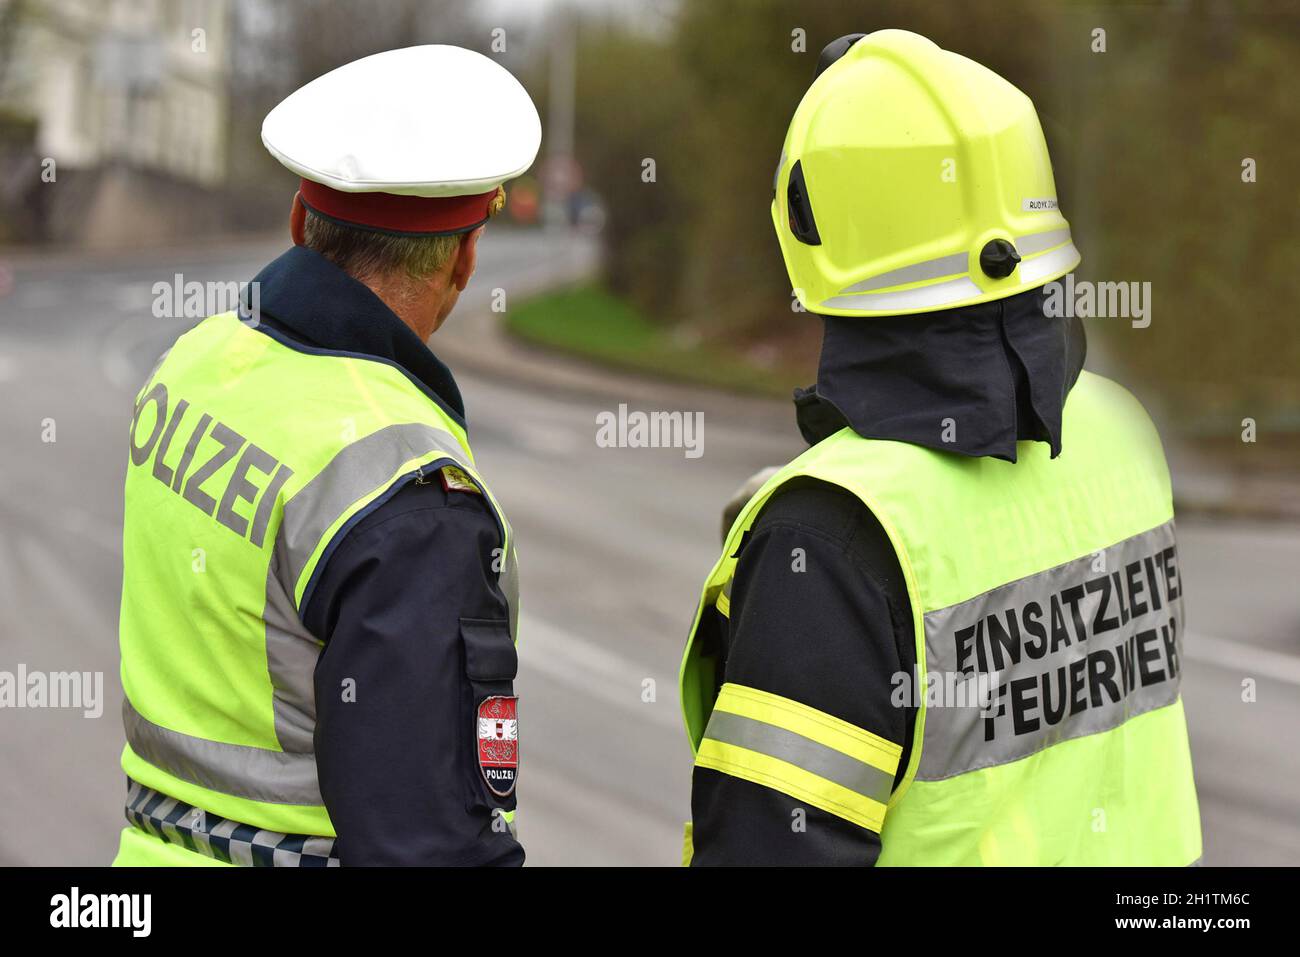 Polizist und Feuerwehrmann von hinten in Oberösterreich, Österreich, Europa - Police officer and firefighter from behind in Upper Austria, Austria, Eu Stock Photo